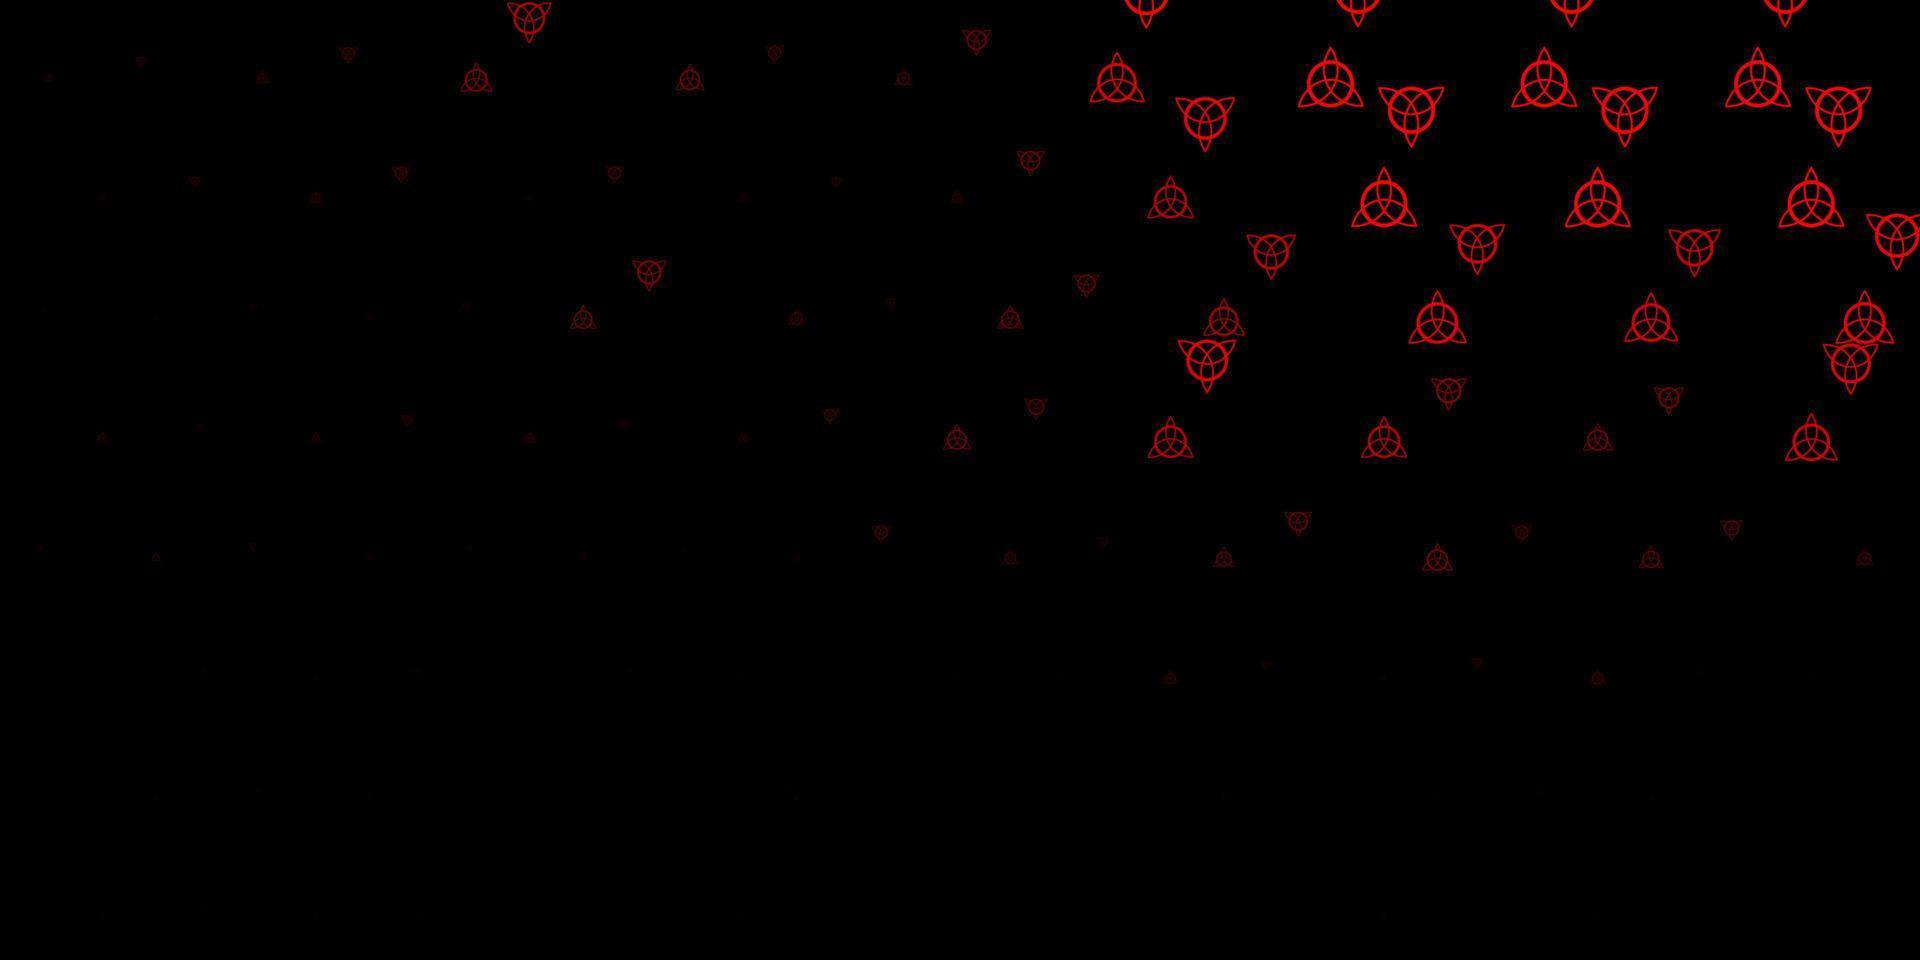 textura vector vermelho escuro com símbolos de religião.